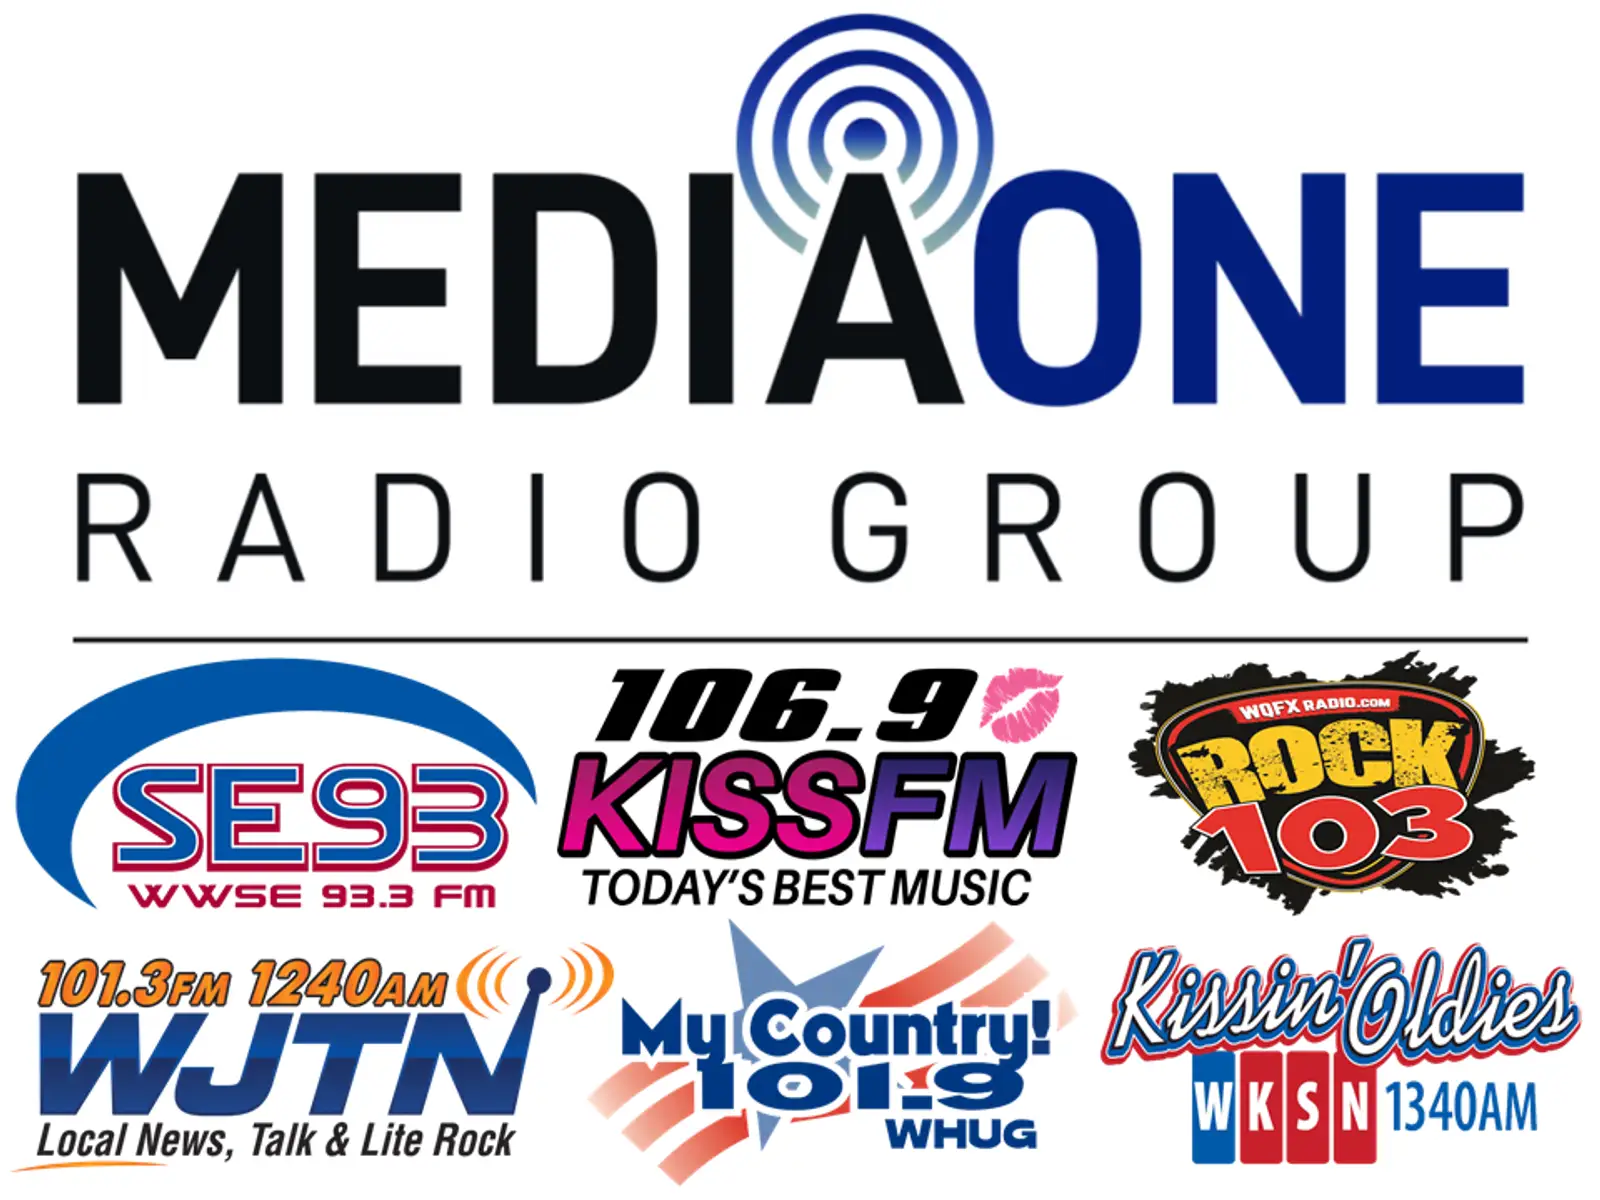 Media One Group Radio logo